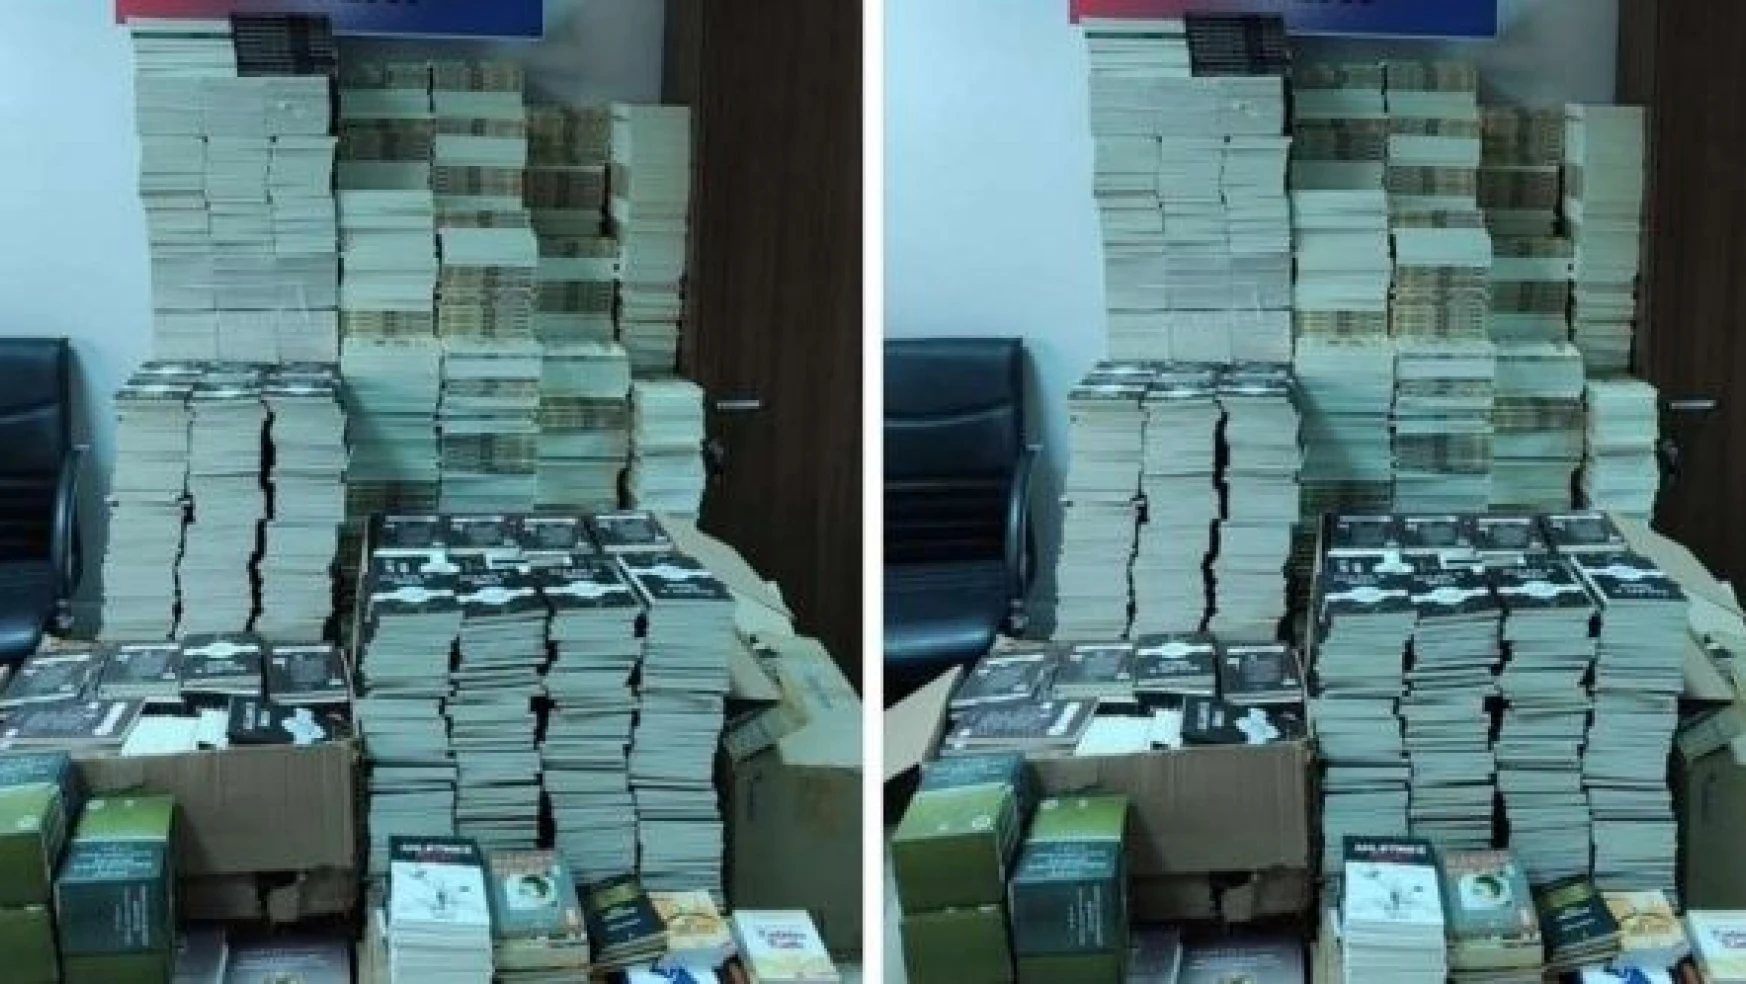 Malatya'da bandrolsüz binlerce kitap ele geçirildi